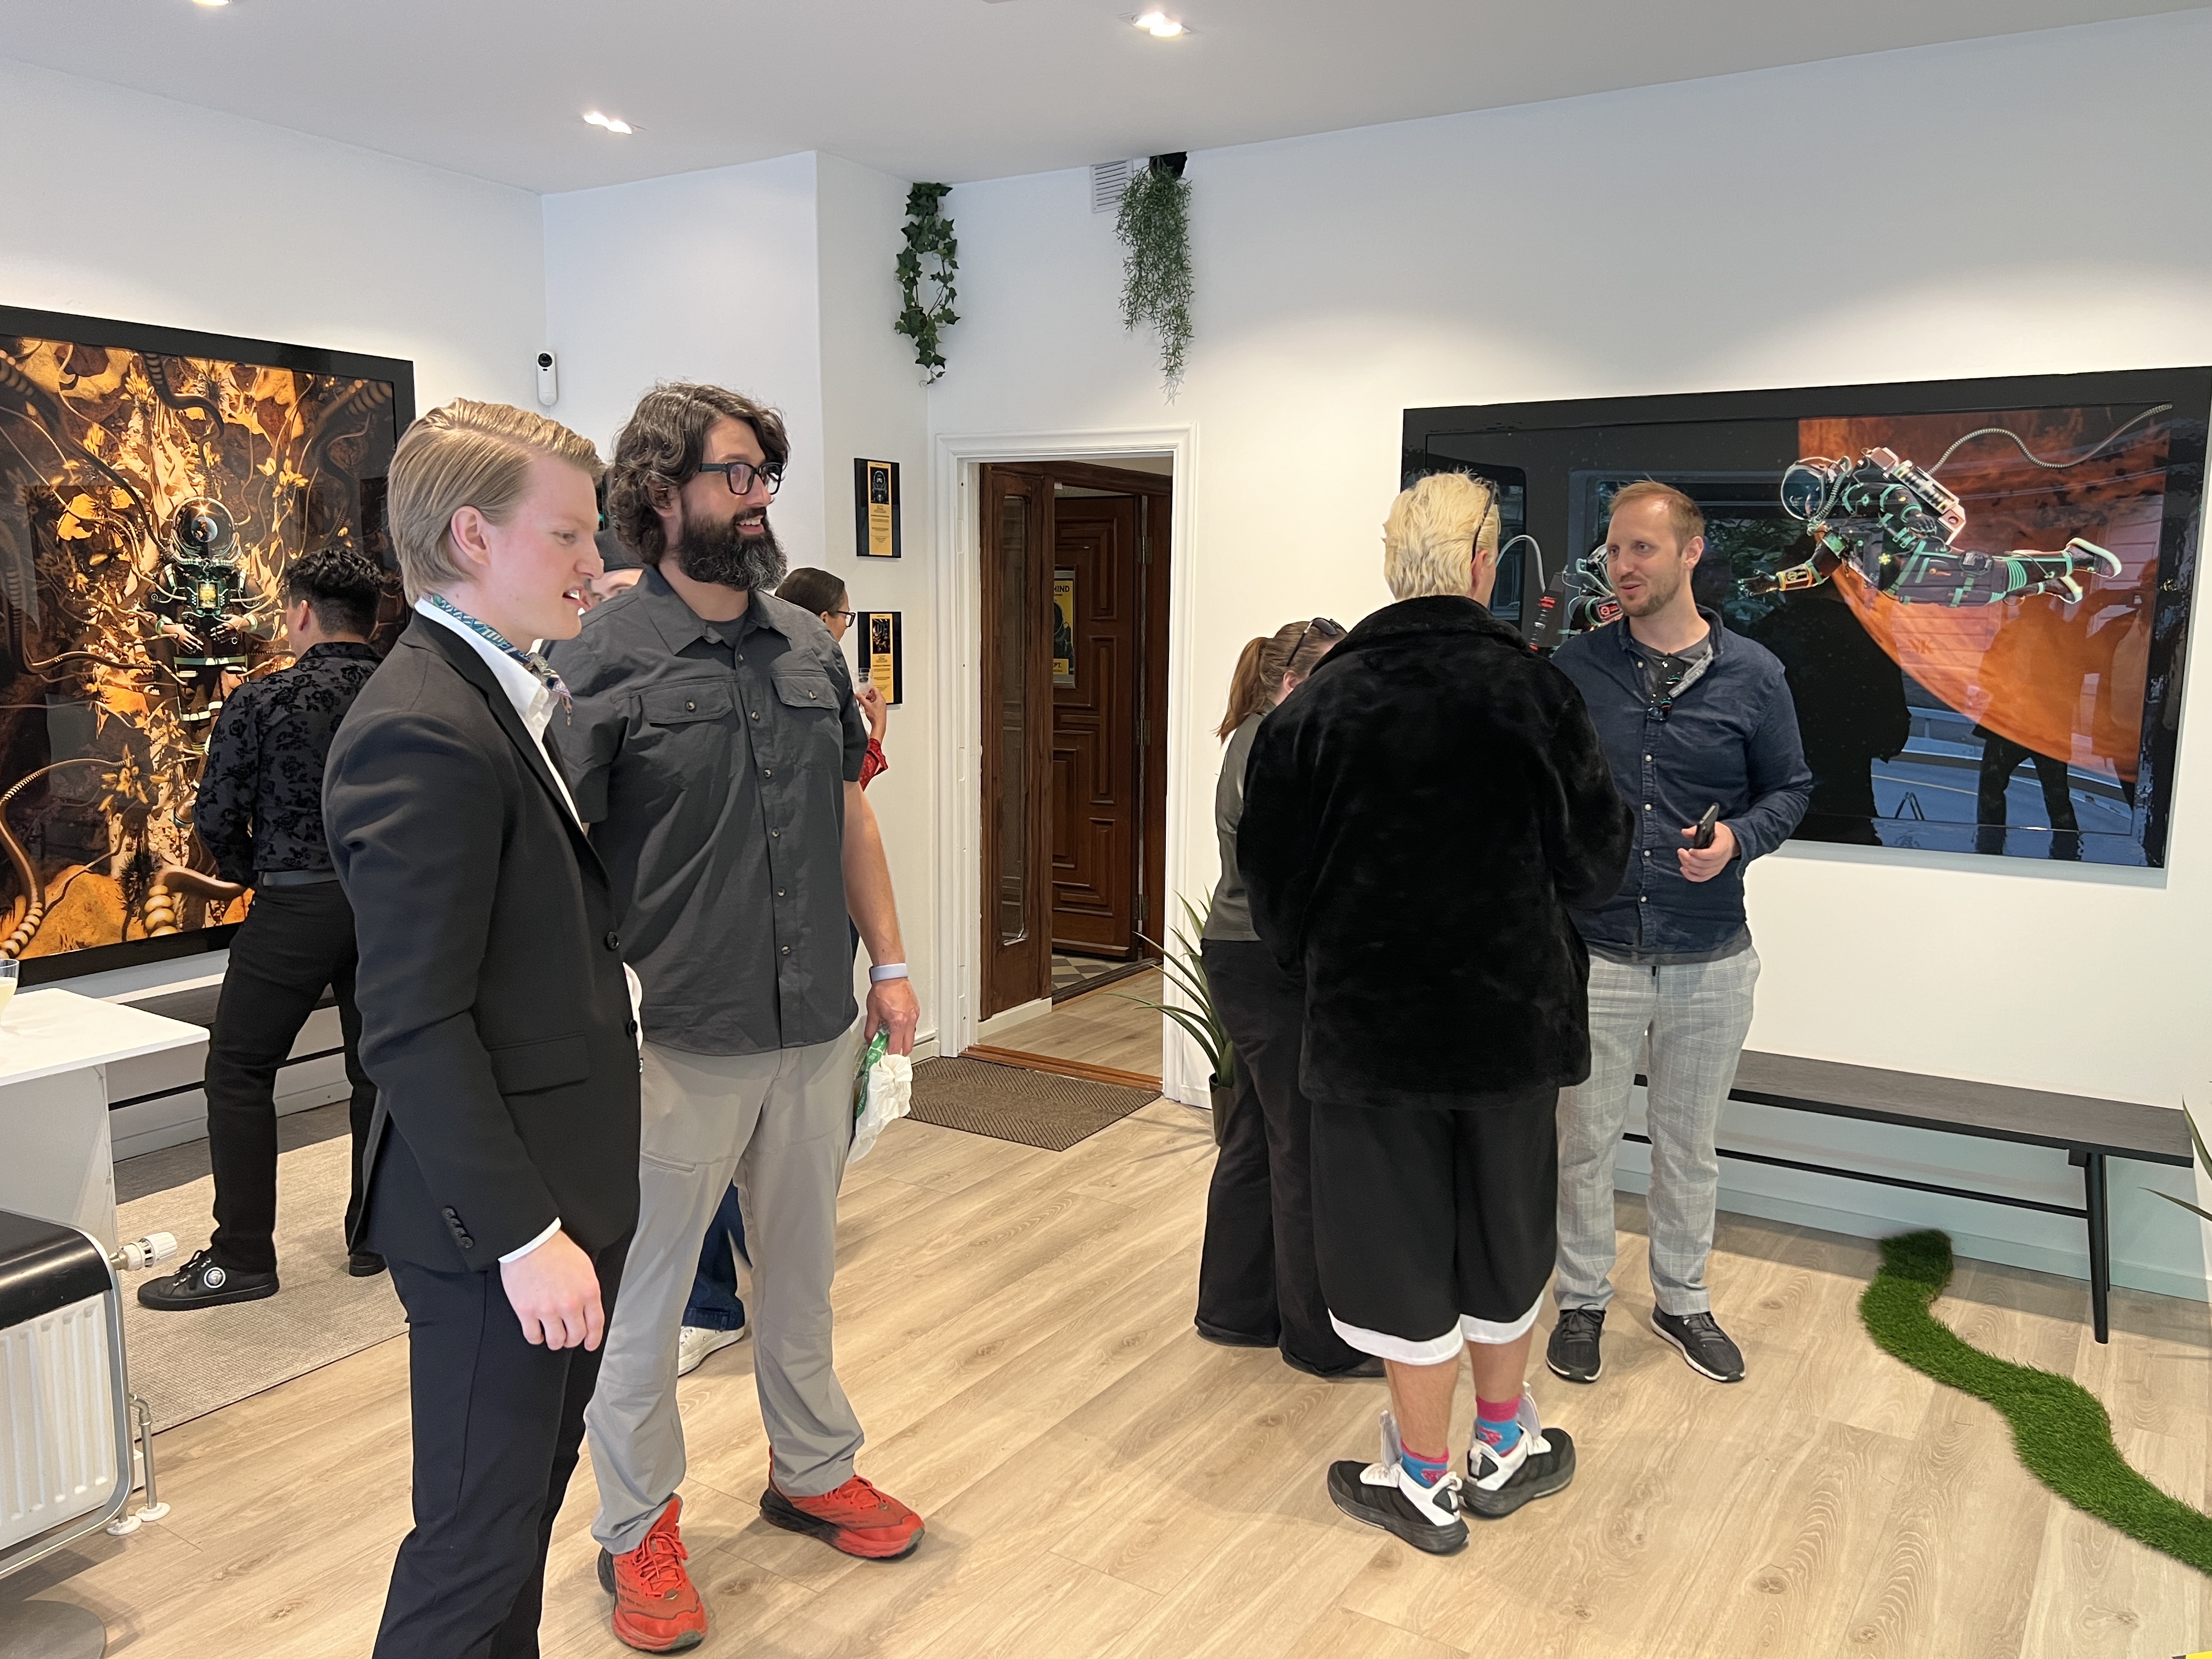 Ved åpningen av utstillingen i Blank Galleri i midten av september hadde også både internasjonale kunstnerkolleger og samlere funnet veien til Blank Galleri i Oslo.